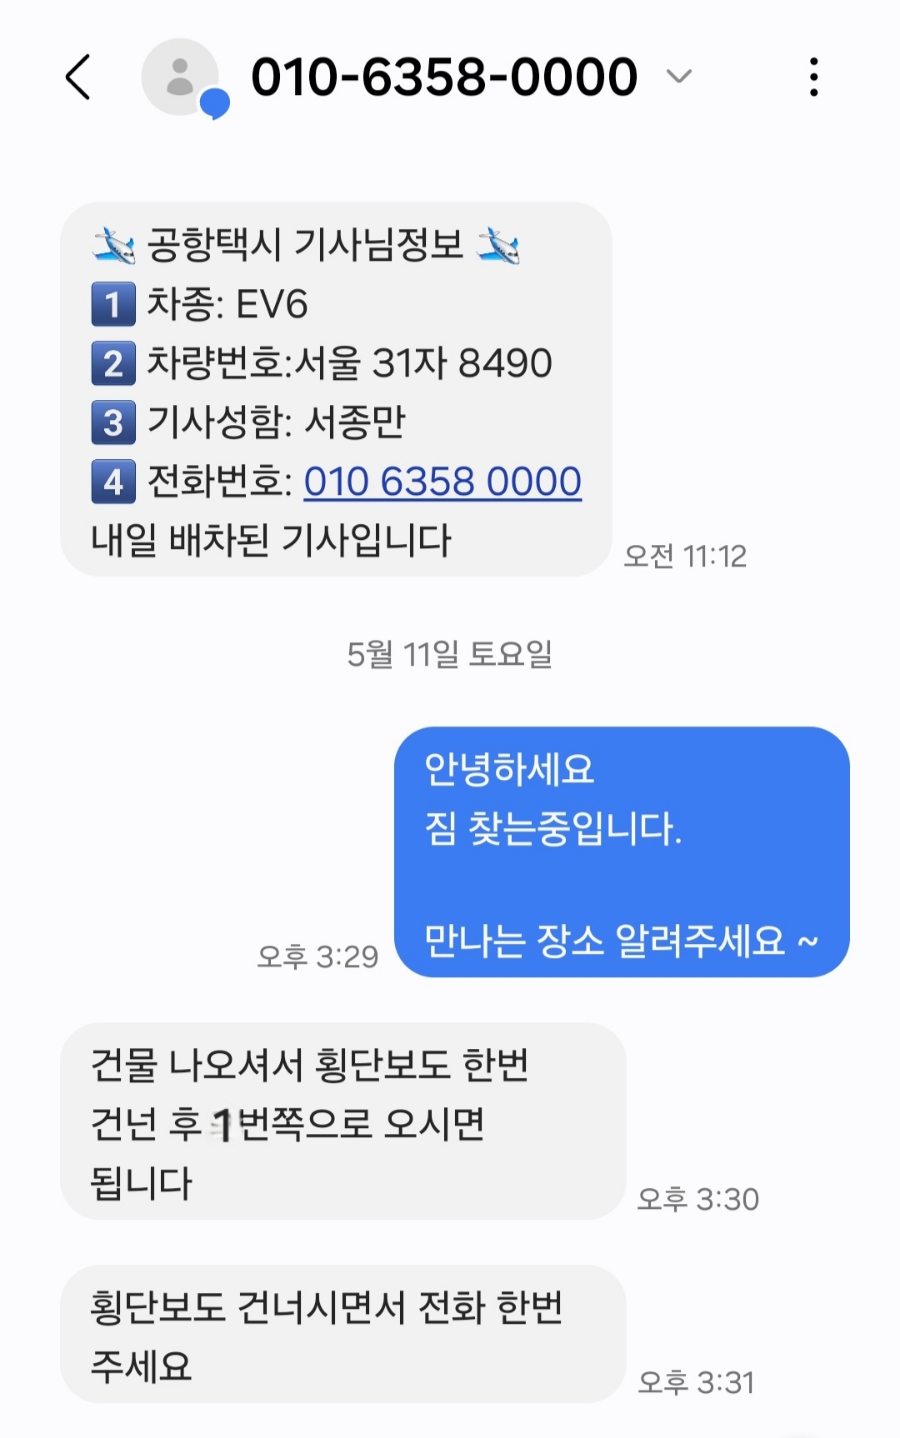 인천공항 택시 통합콜센터 수원. 용인 예약 후기 & 가격